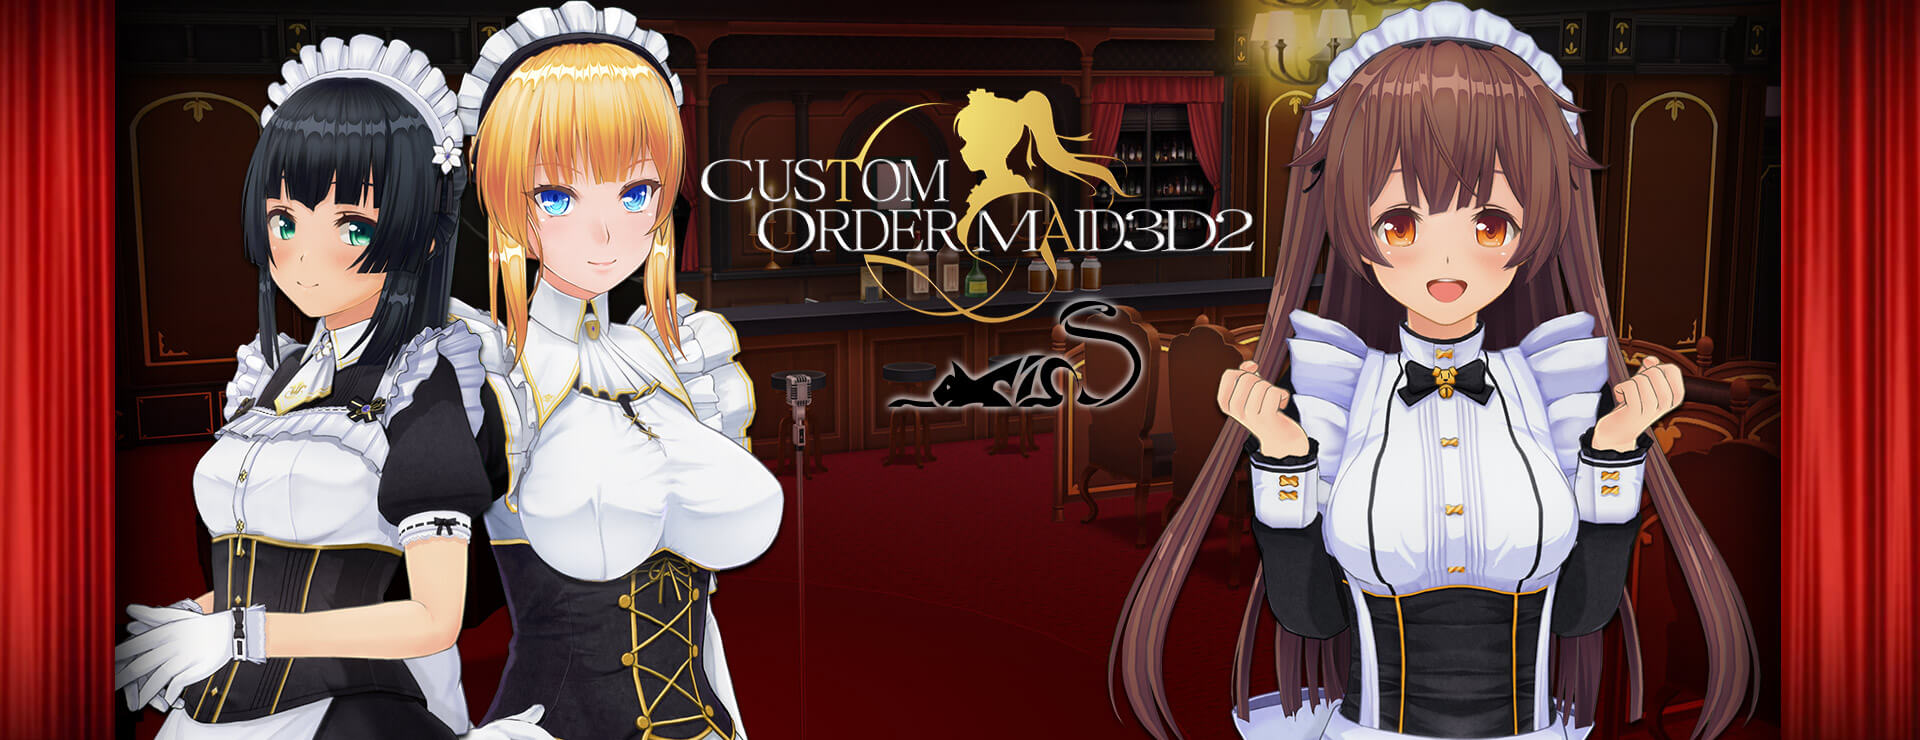 Custom Order Maid 3D2 - It's a Night Magic Premium Empire Bundle - Simulación Juego